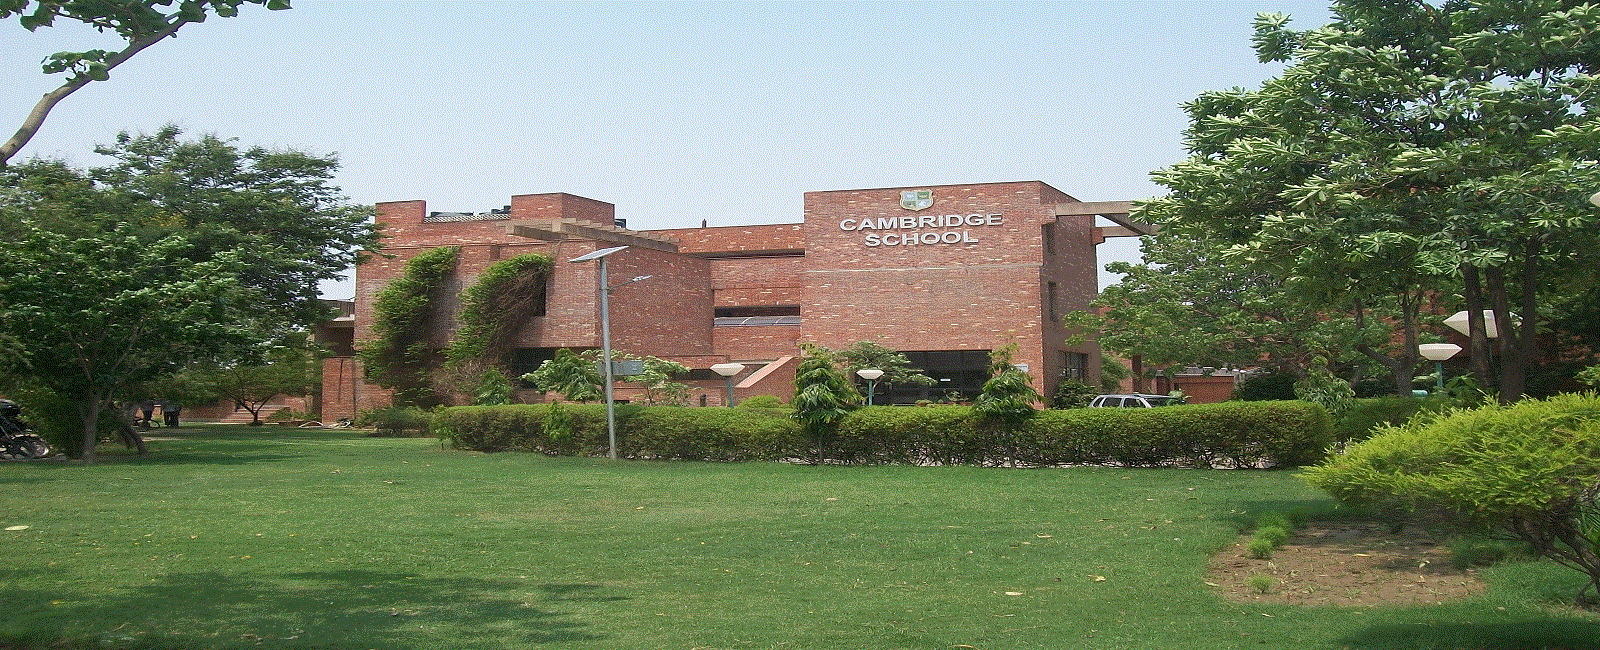 Cambridge School Noida Schools 003